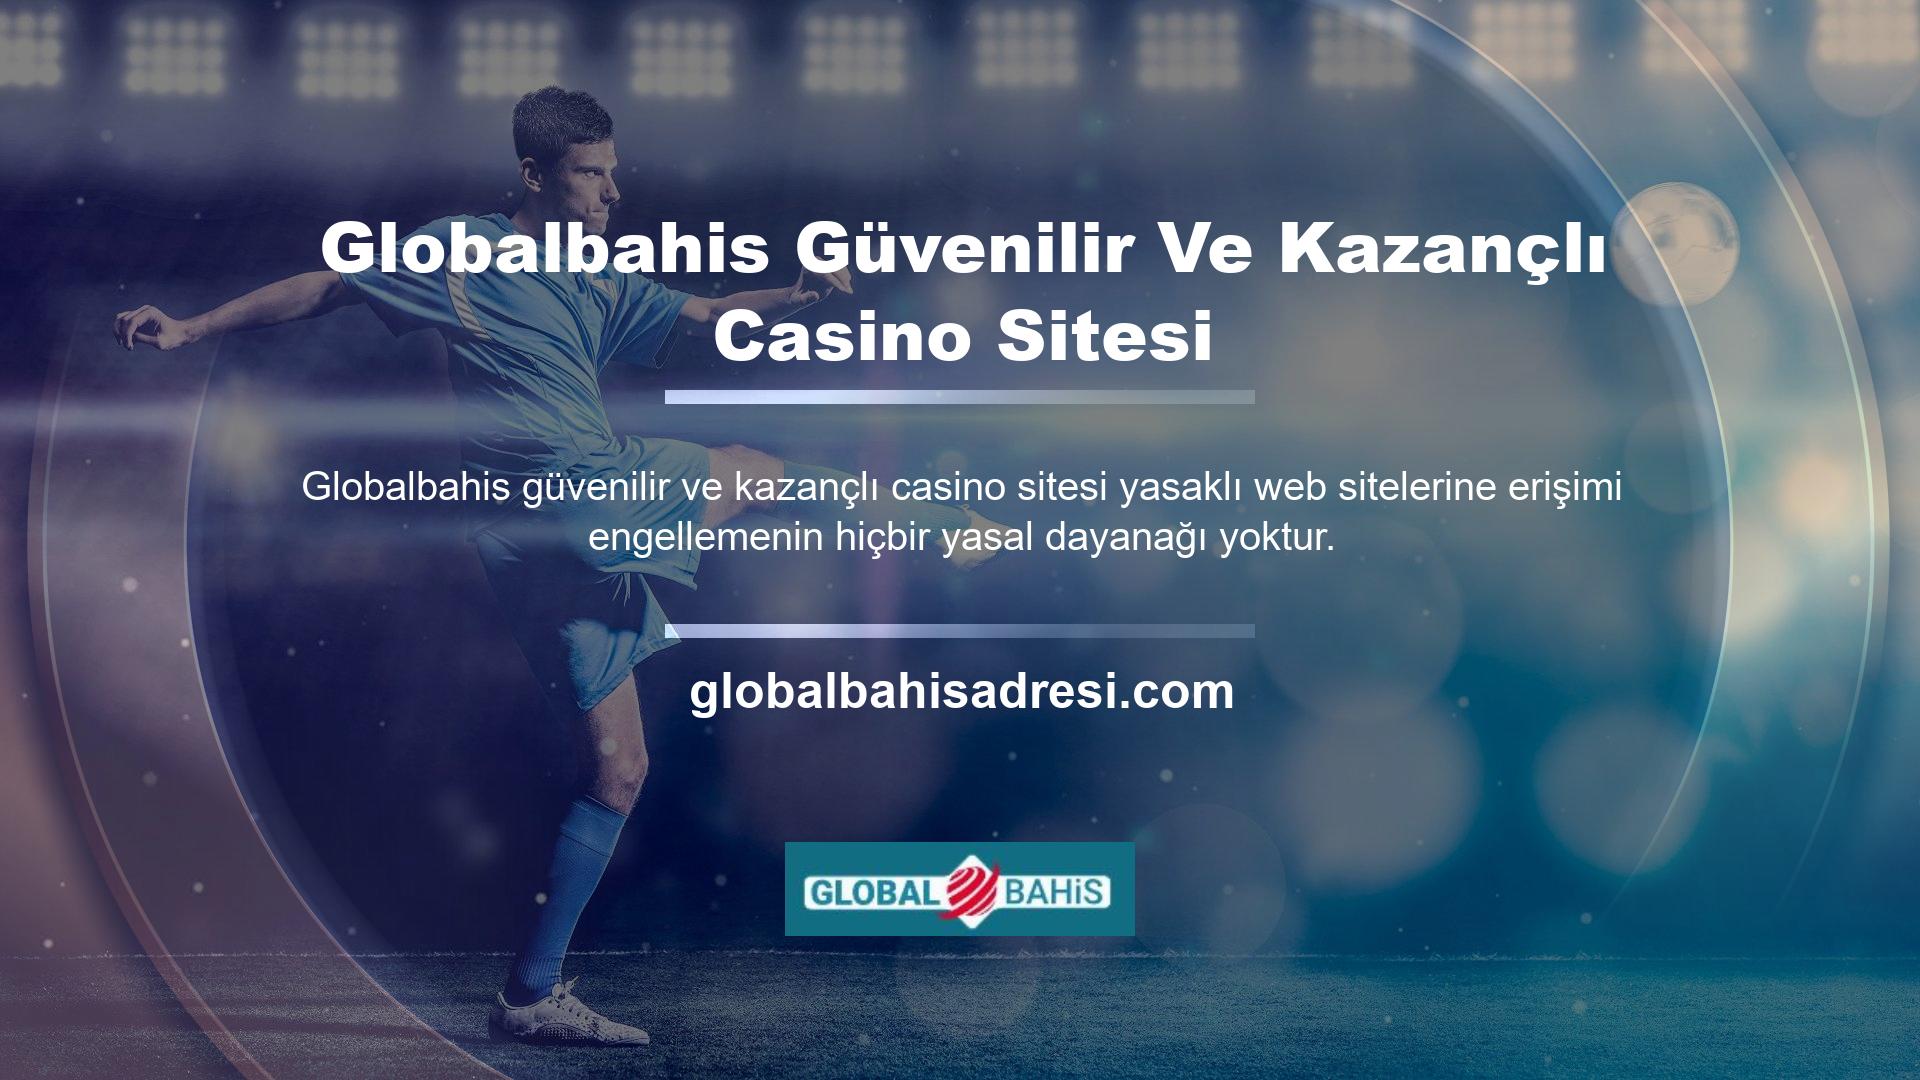 Bunu kullanan bazı siteler, onlara Globalbahis güvenilir ve kazançlı casino sitesi ödeme yapmanızı engellemek için dolandırıcılık faaliyetleri düzenleyebilir